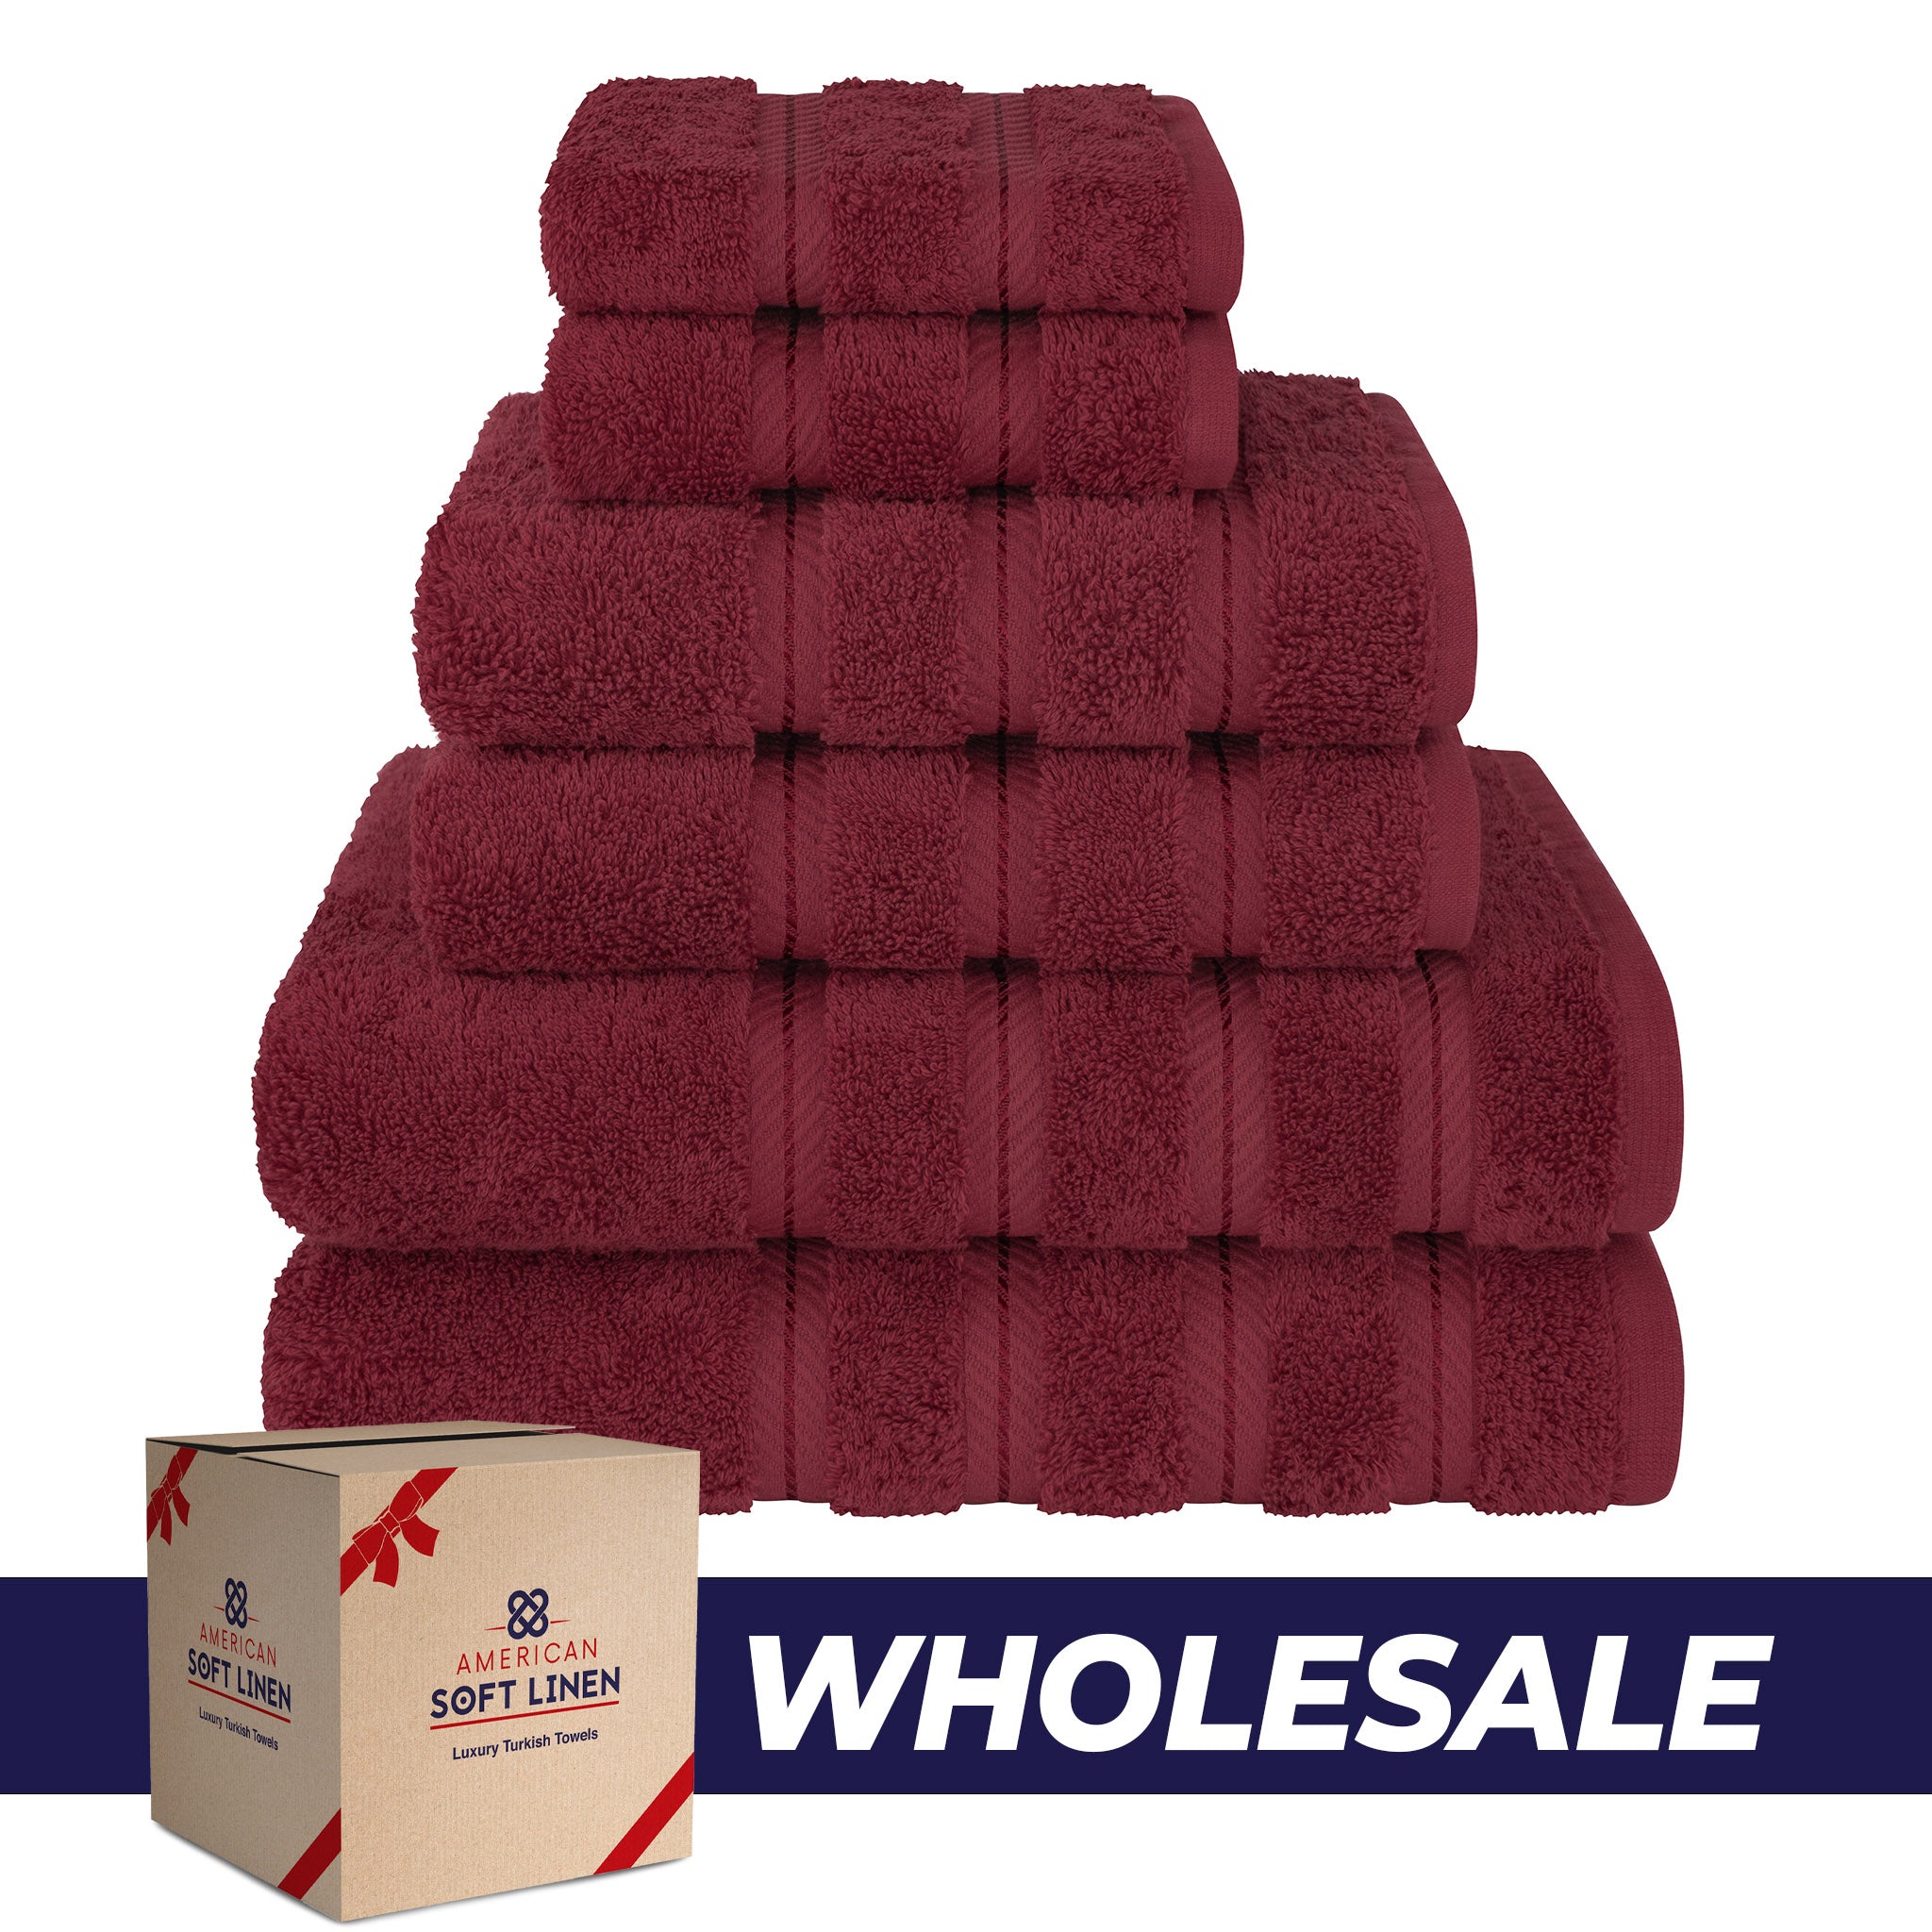 American Soft Linen 100% Turkish Cotton 6 Piece Towel Set Wholesale bordeaux-red-0